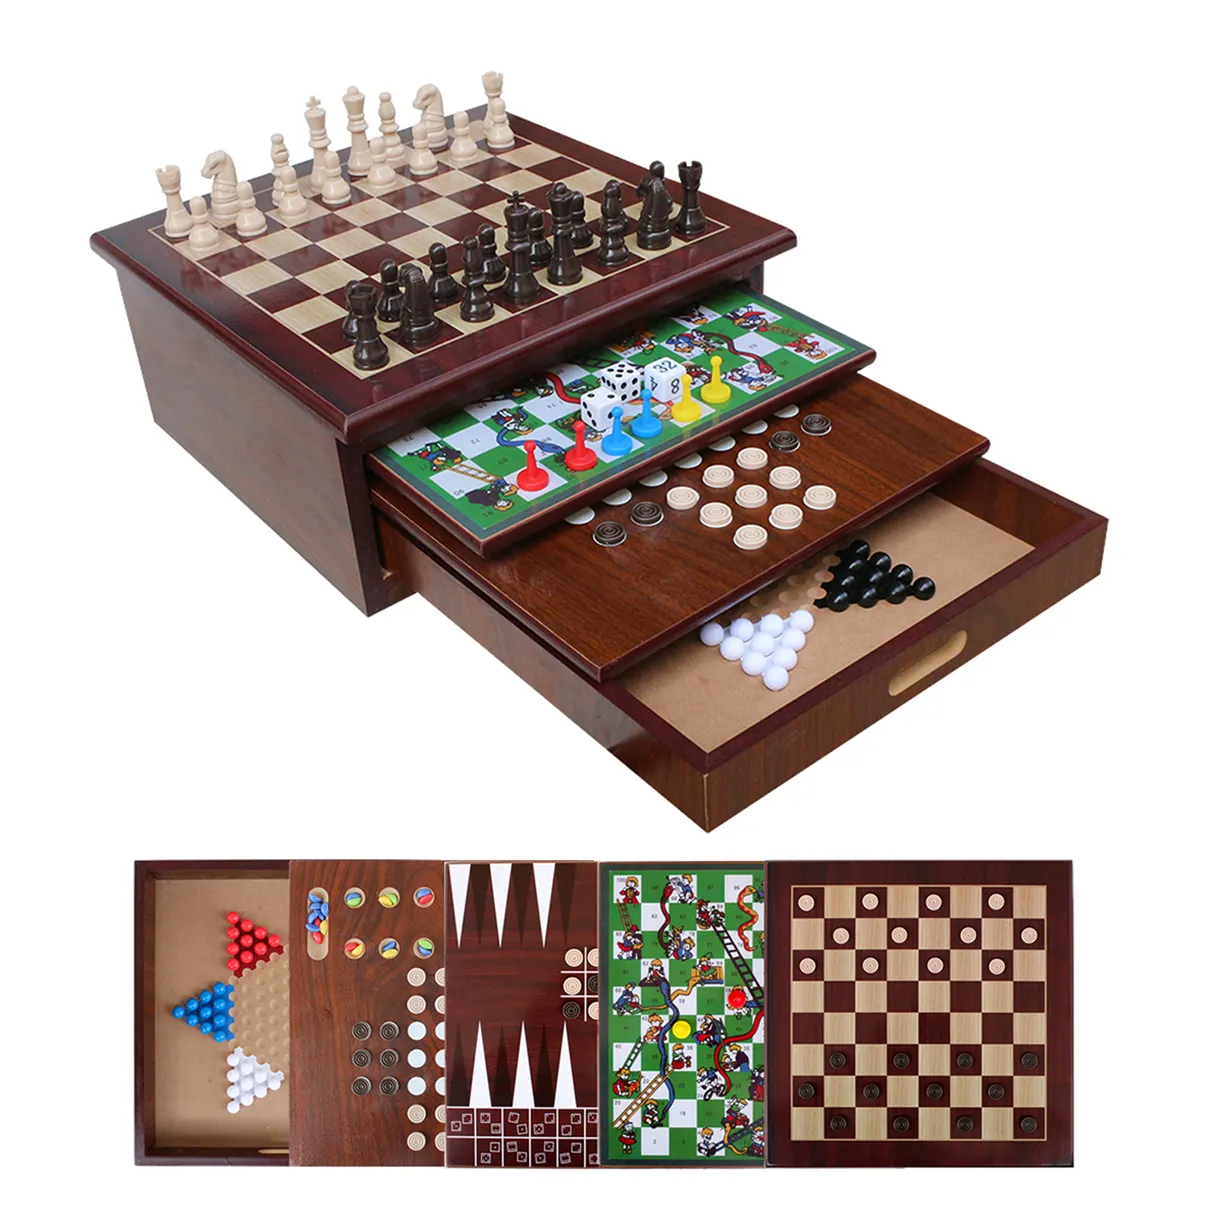 भंडारण दराज चेकर्स शतरंज के साथ 1 टेबलटॉप गेम सेंटर में डीलक्स 10 में भंडारण दराज